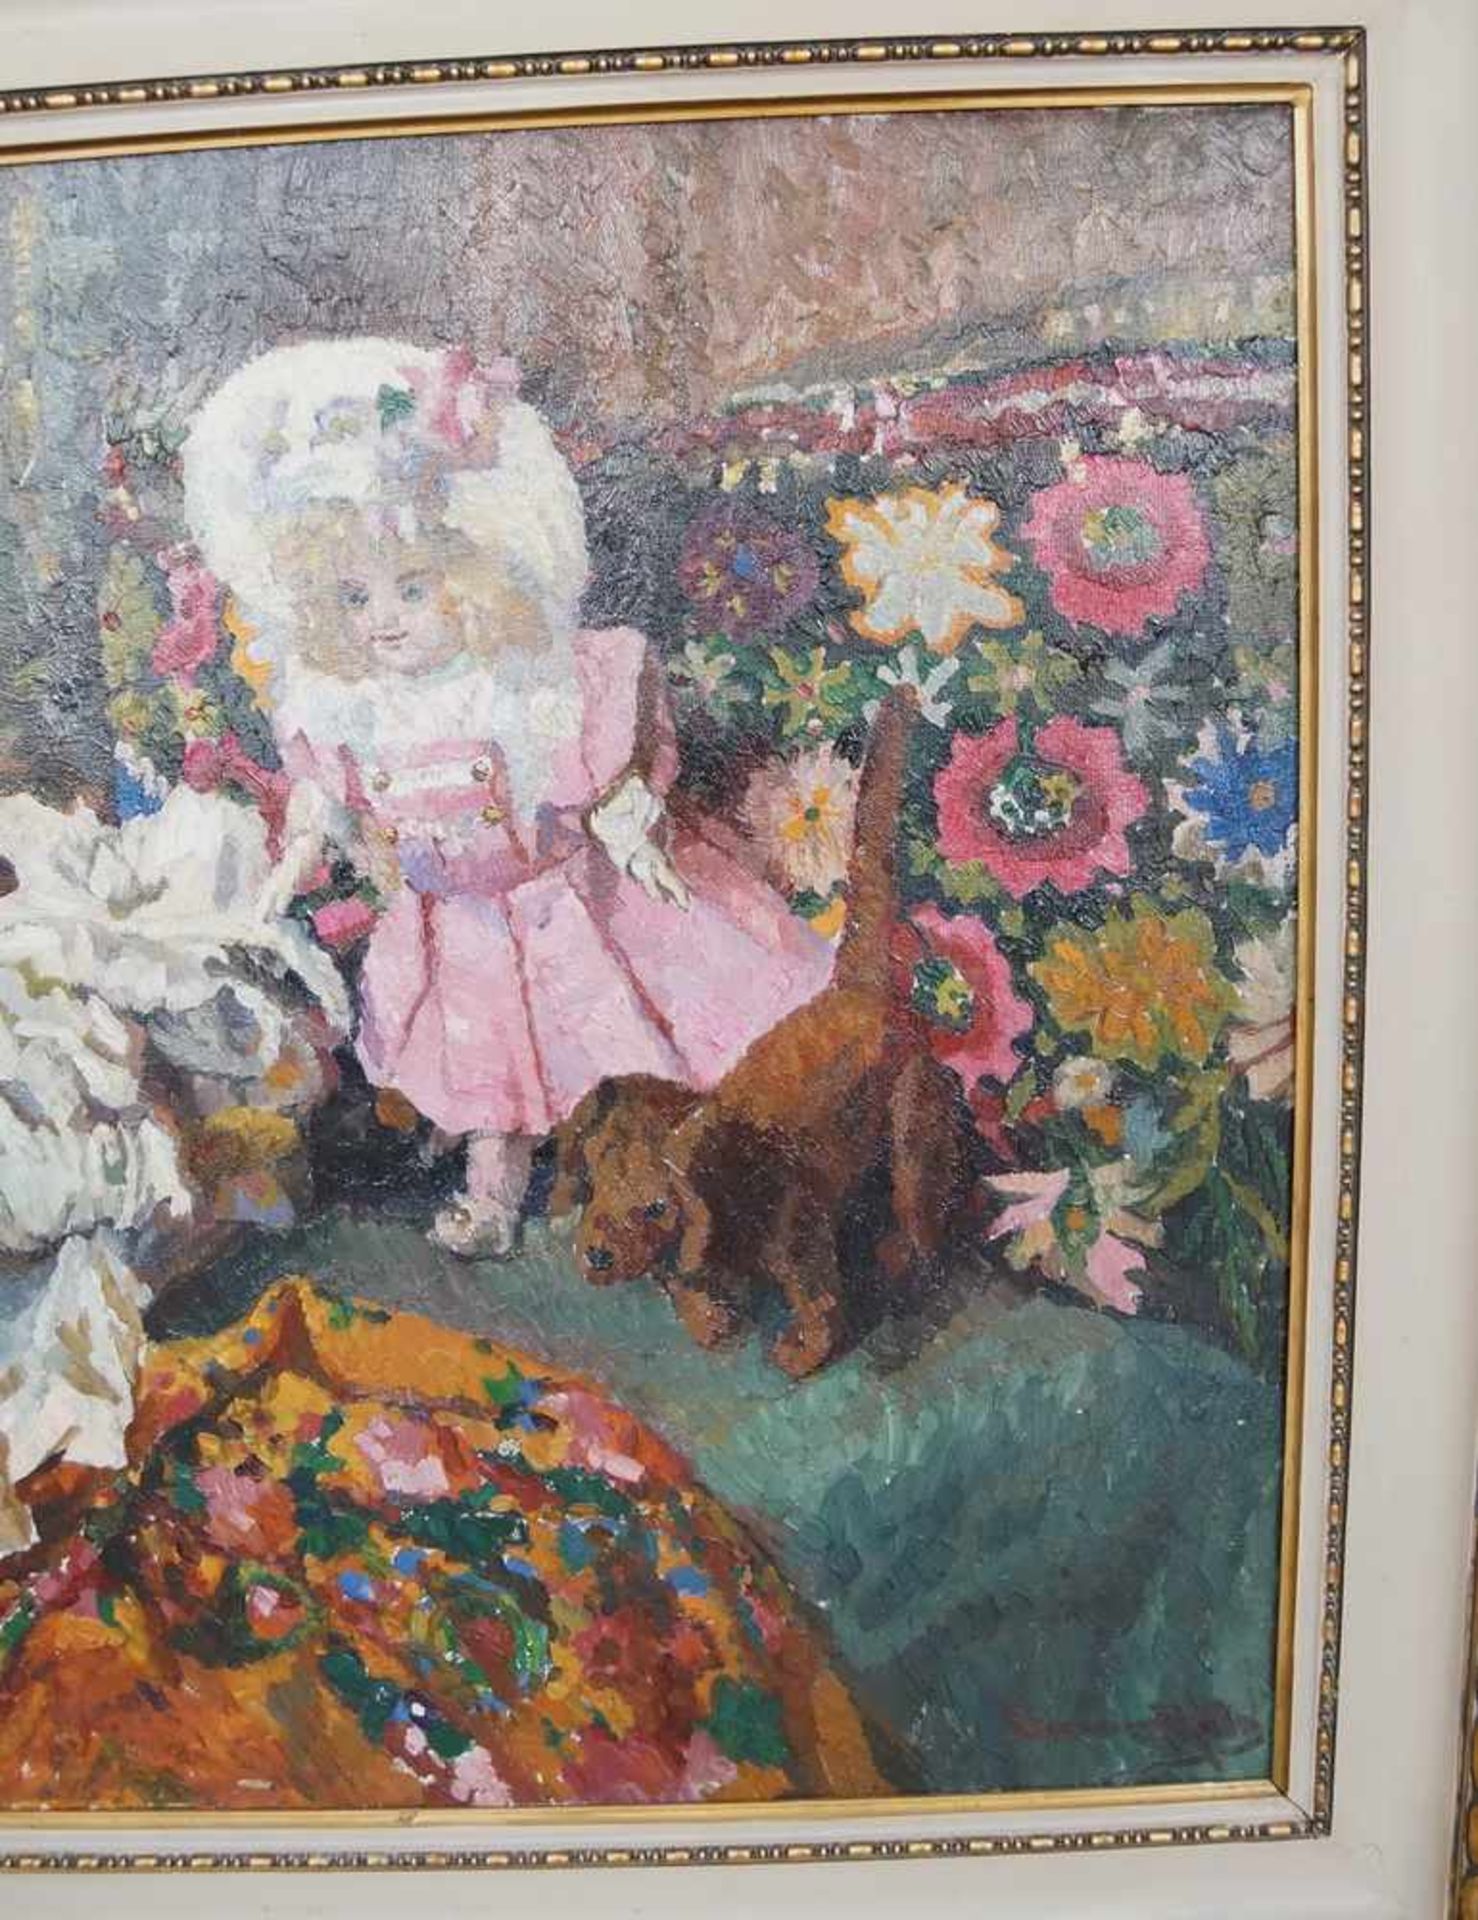 Liebliches Gemälde in Öl auf Leinwand, gerahmt, Kind mit Teddybär und Hund, 103x111cm- - -24.00 % - Bild 4 aus 6